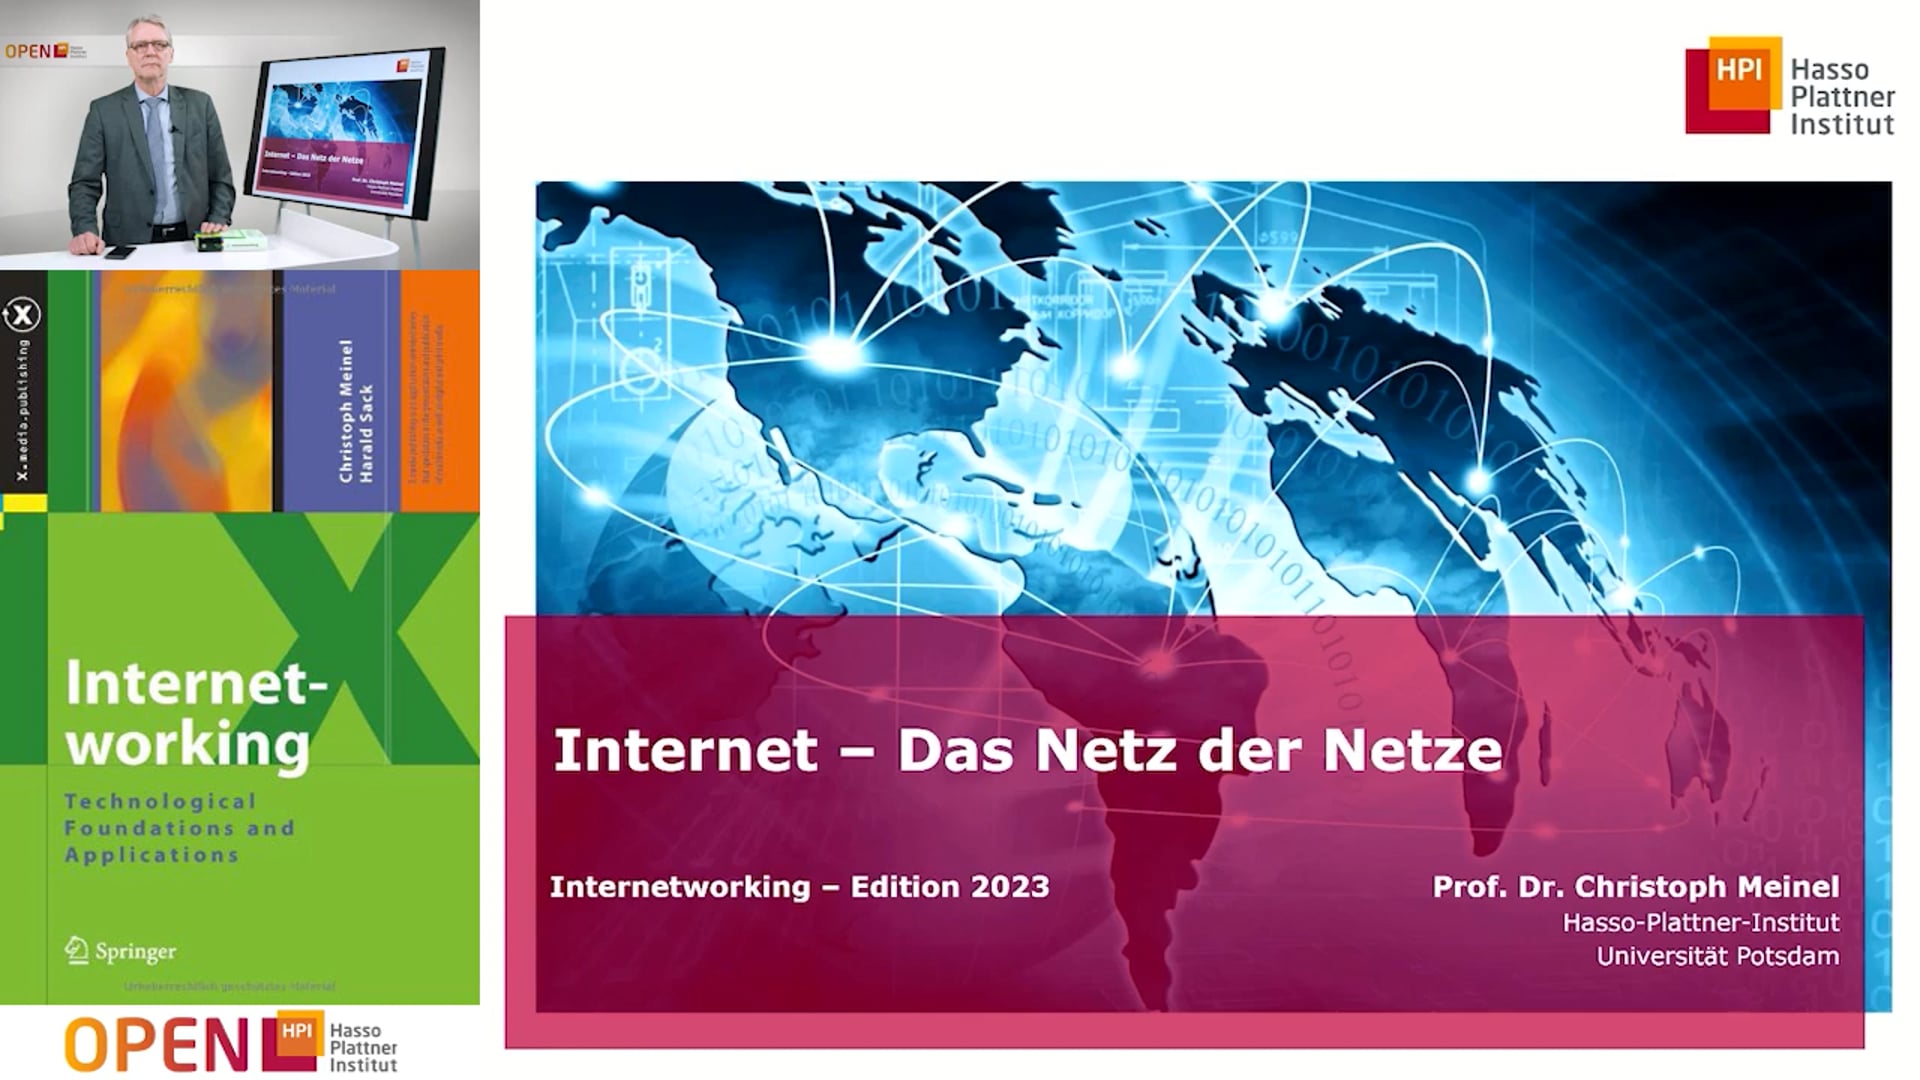 1.2 Internet – Das Netz der Netze, Internetworking Edition 2023